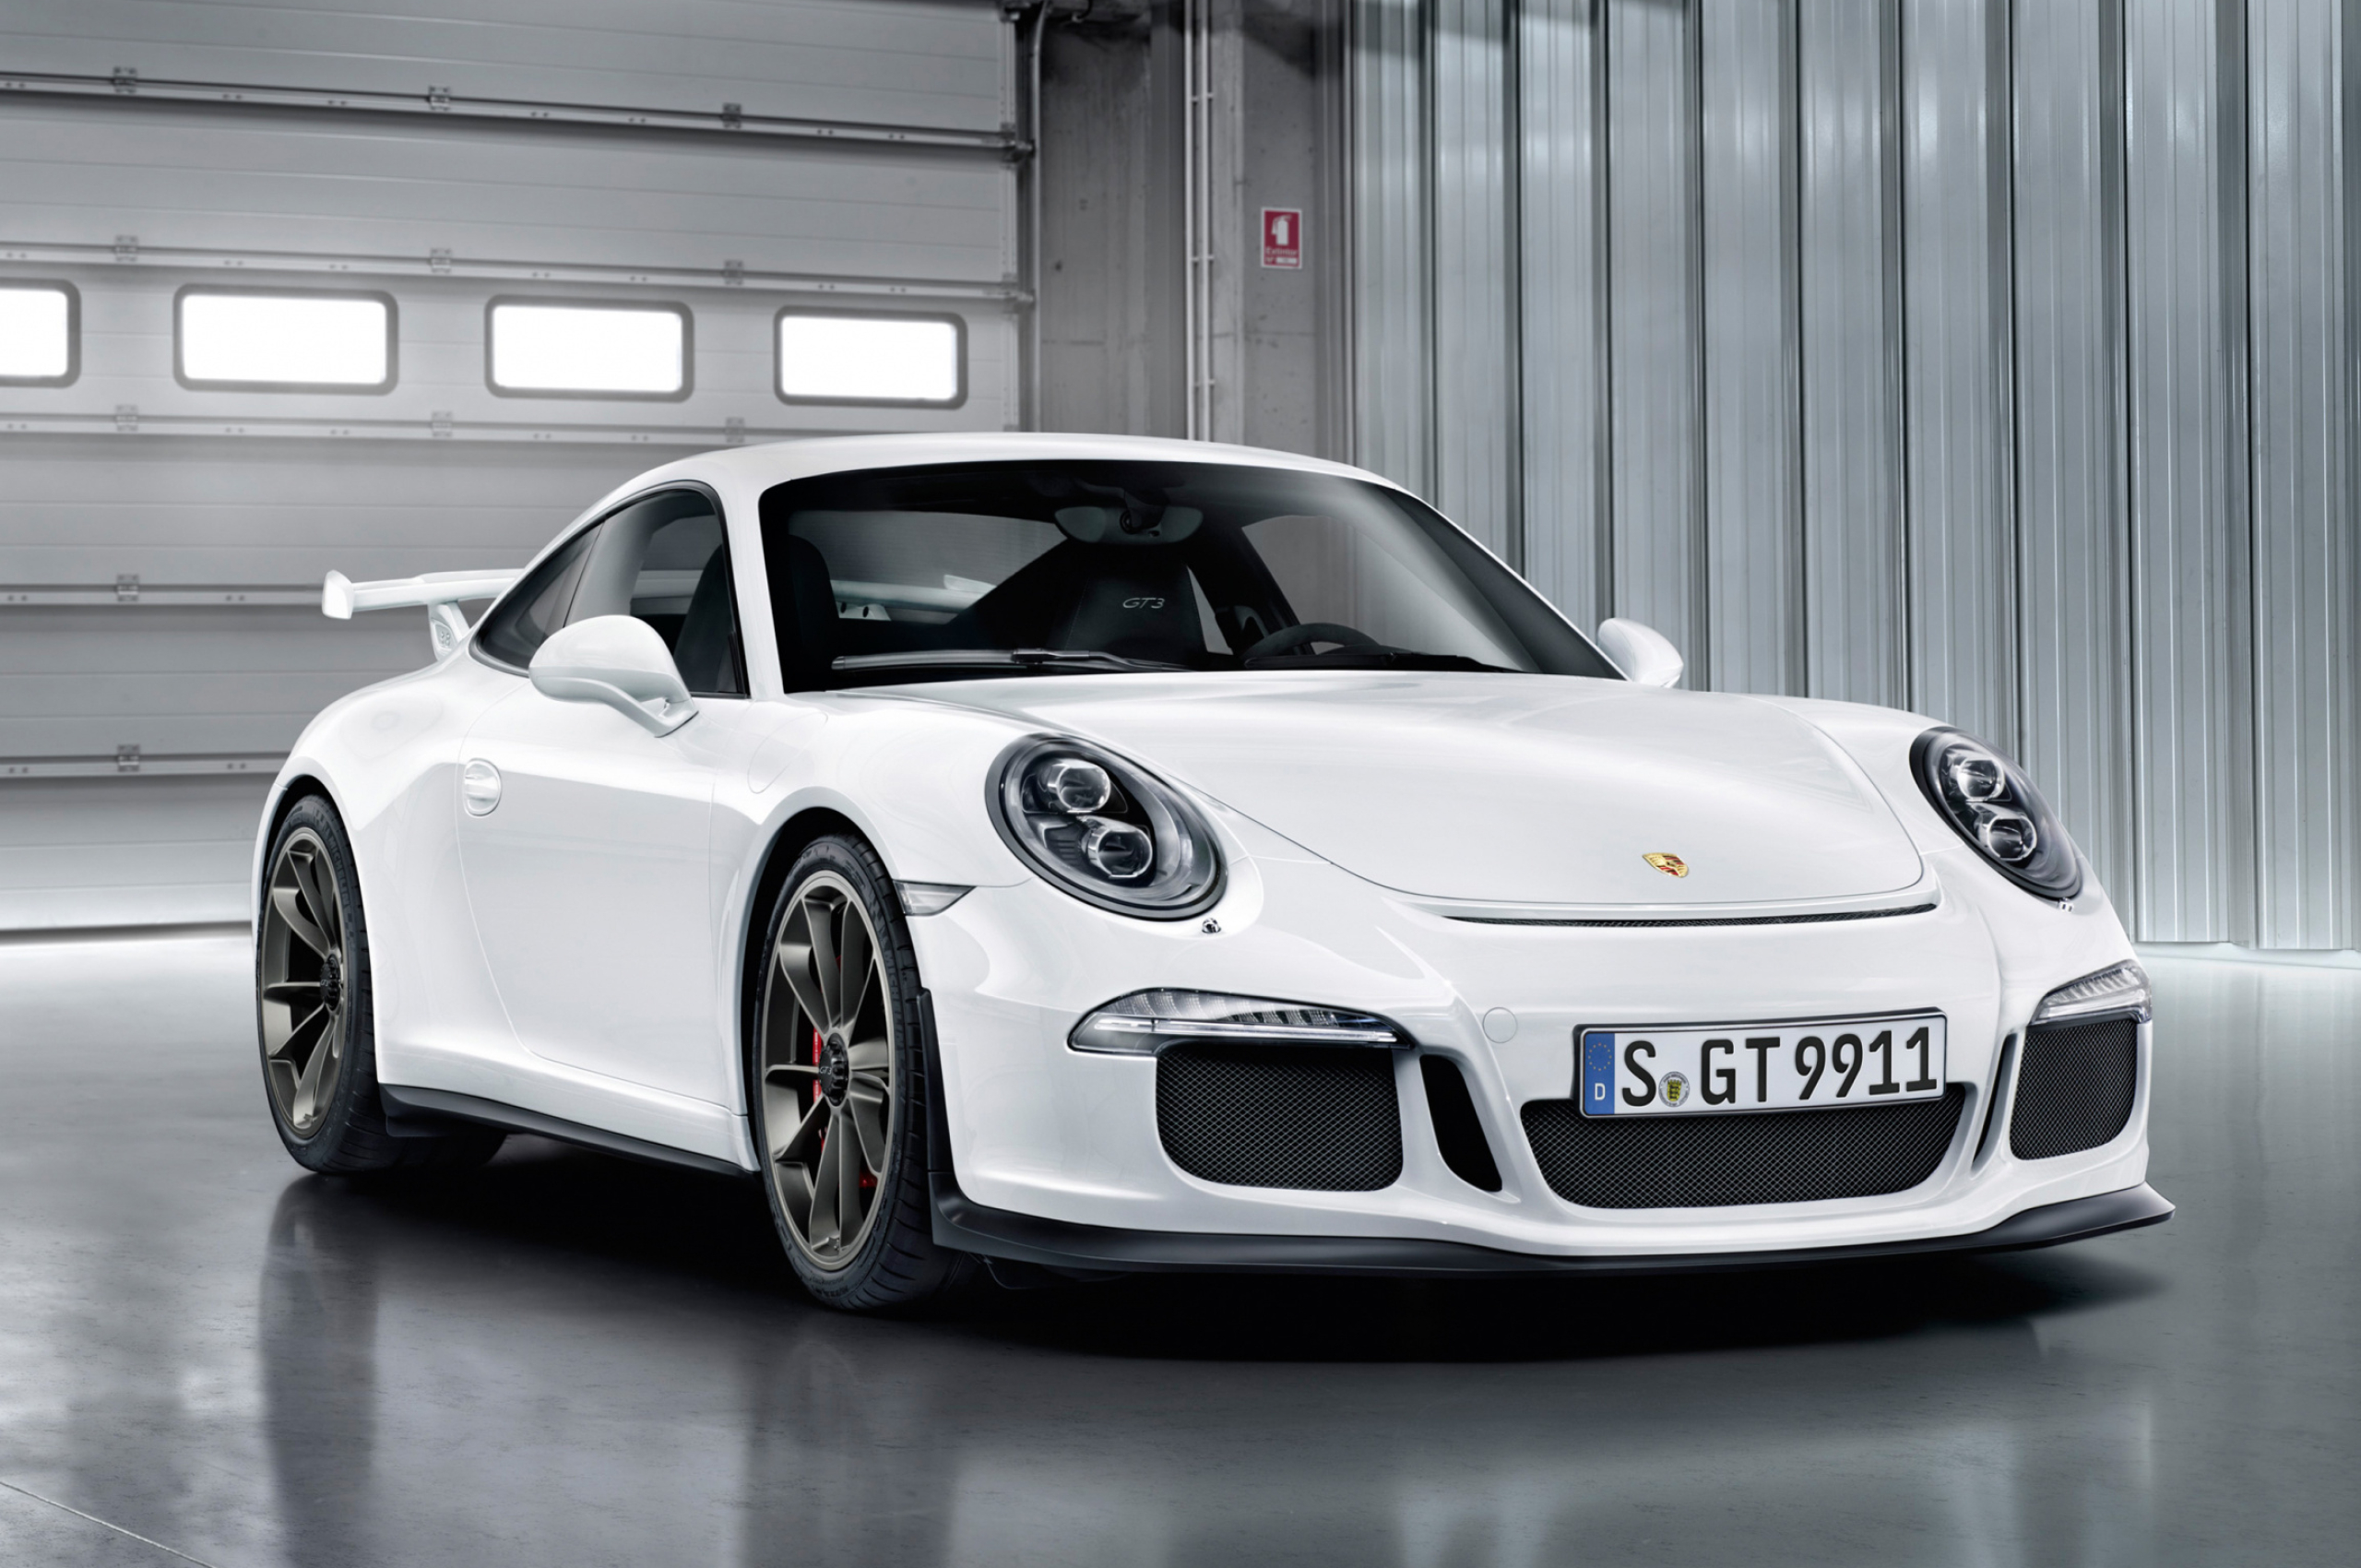 Porsche 911 GT3 RS, High-performance sports car, Speed and power, Cutting-edge design, 2560x1700 HD Desktop